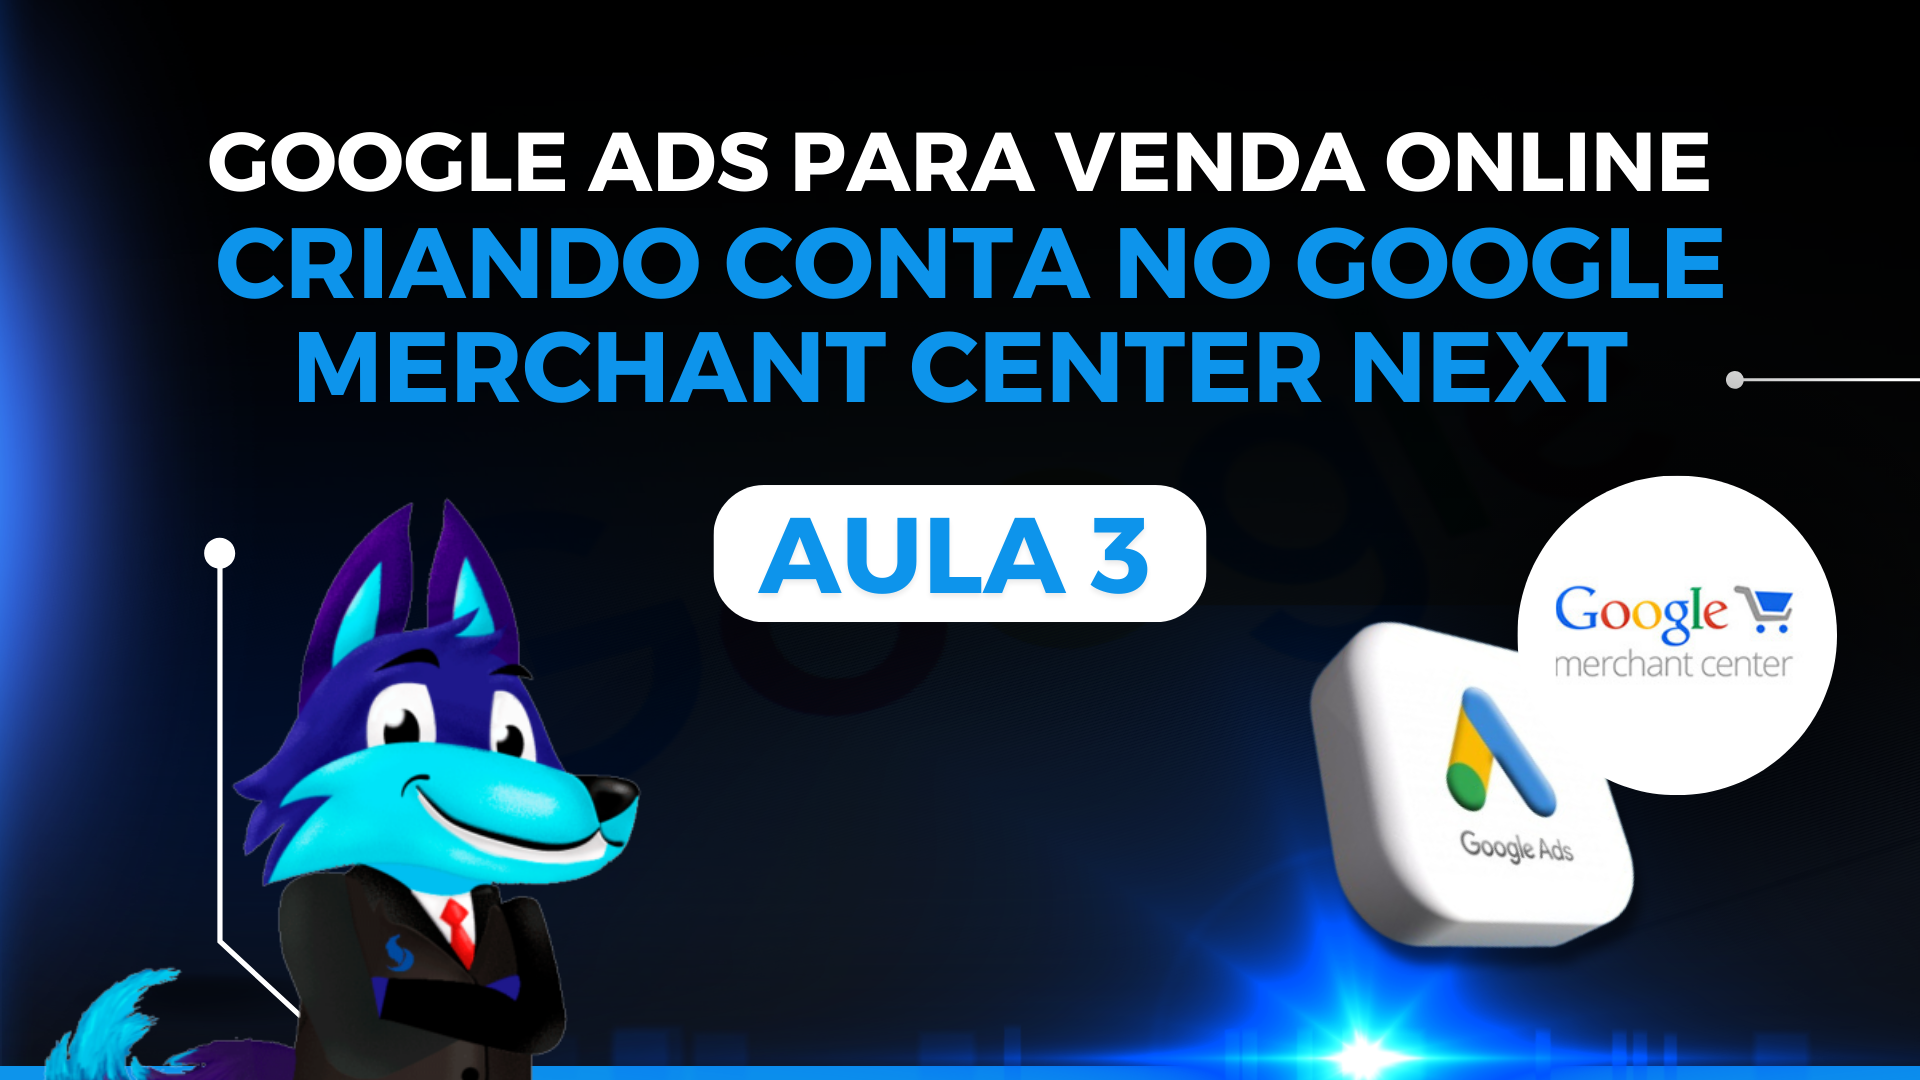 Curso de Google Ads para Venda Online - Aula 03: Como criar uma conta no Google Merchant Center Next?